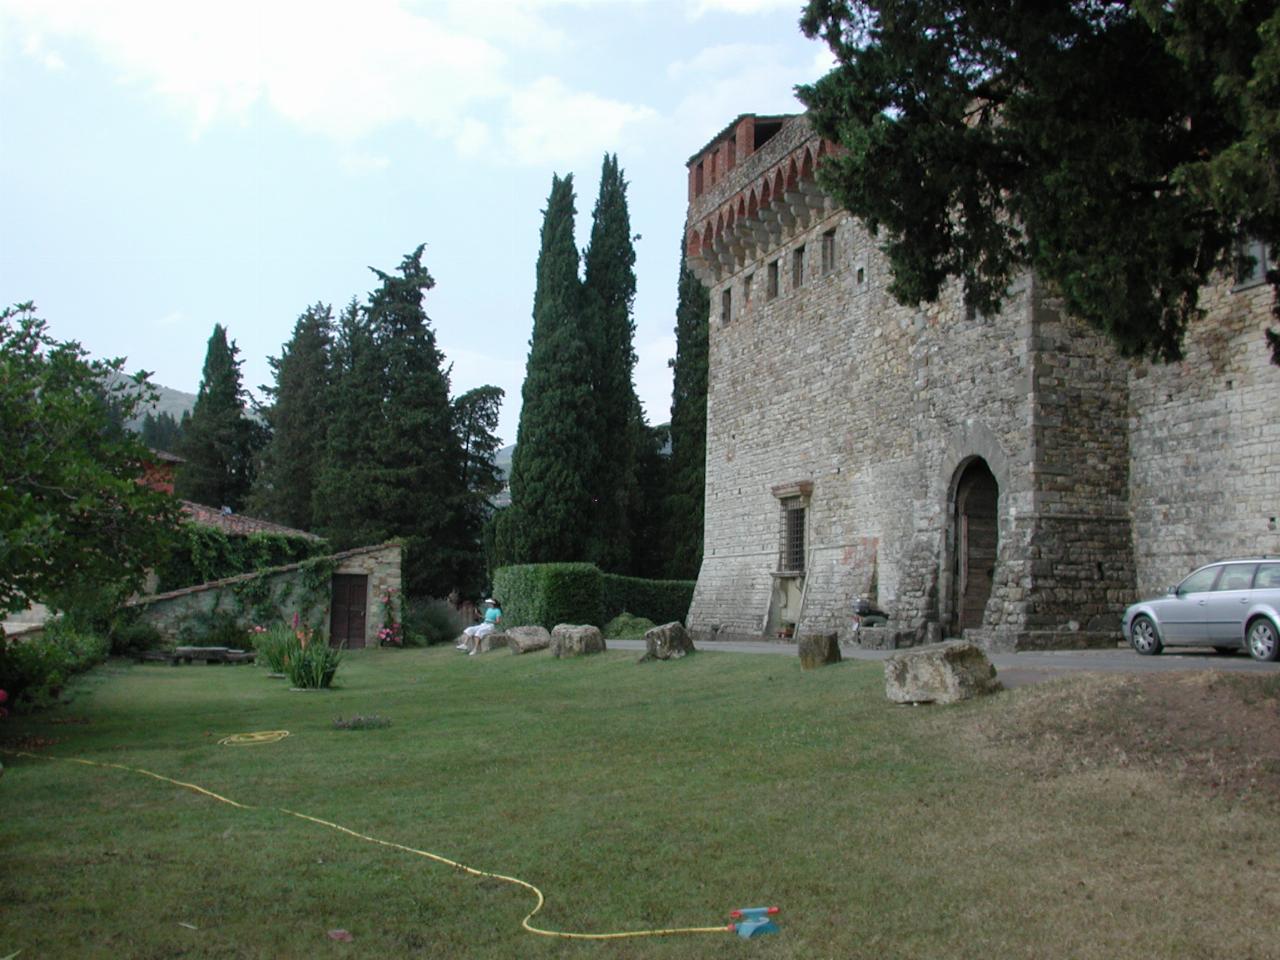 Castello del Trebbio, with gardens and store (left hand side)